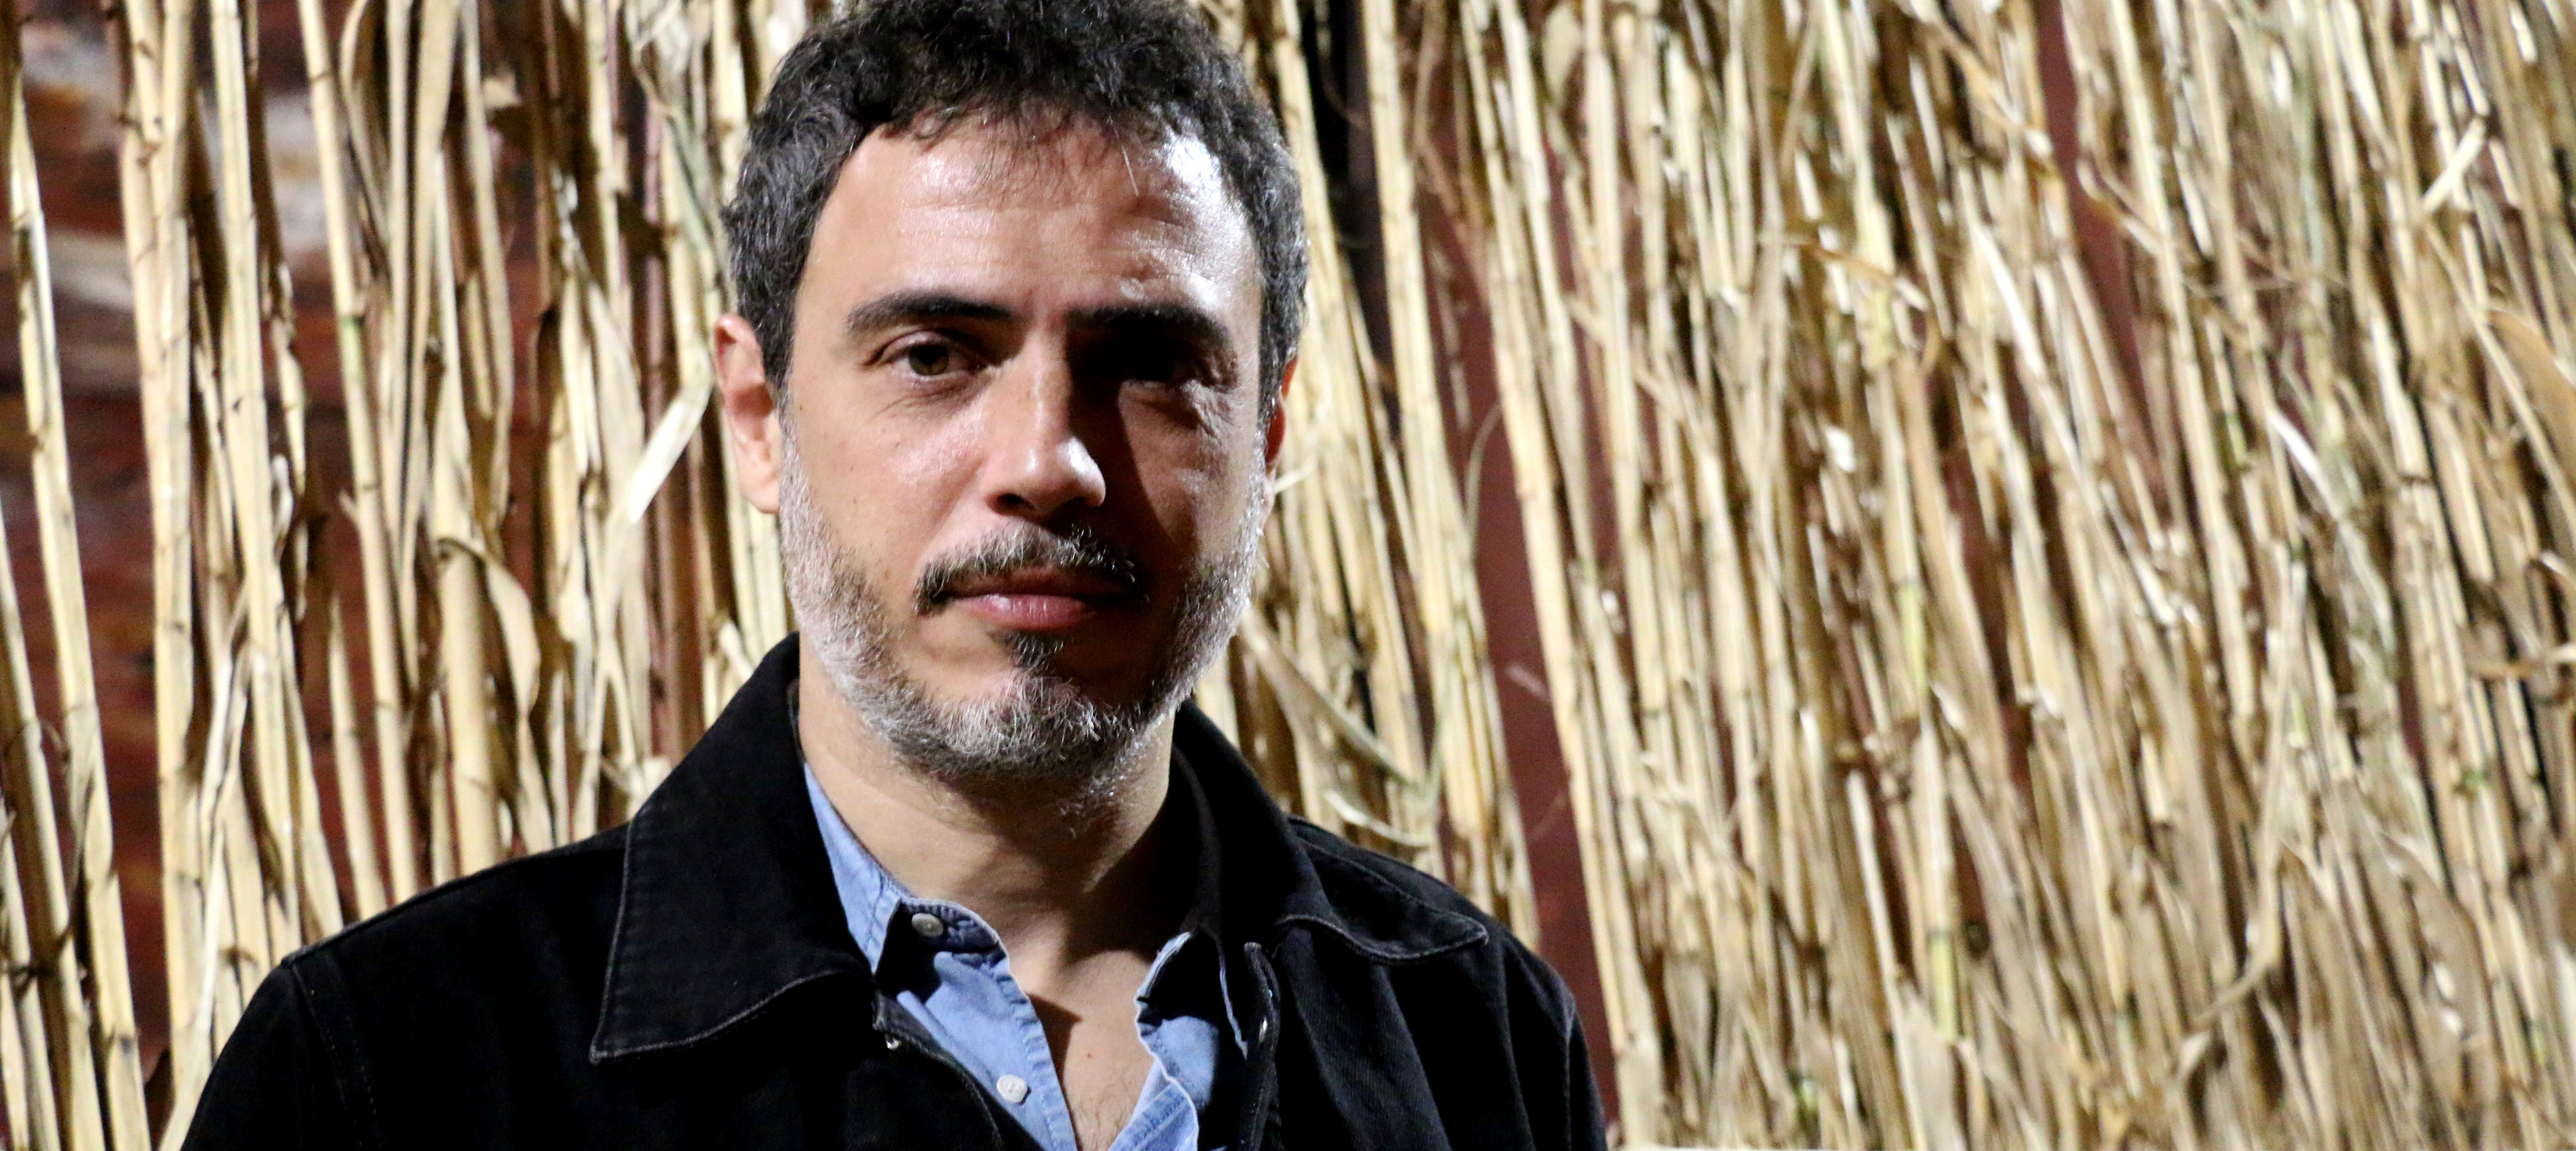 L'actor Julio Manrique davant les canyes de l'escenari d''Èdip', al teatre Romea (fotografia: Laura Gállego)